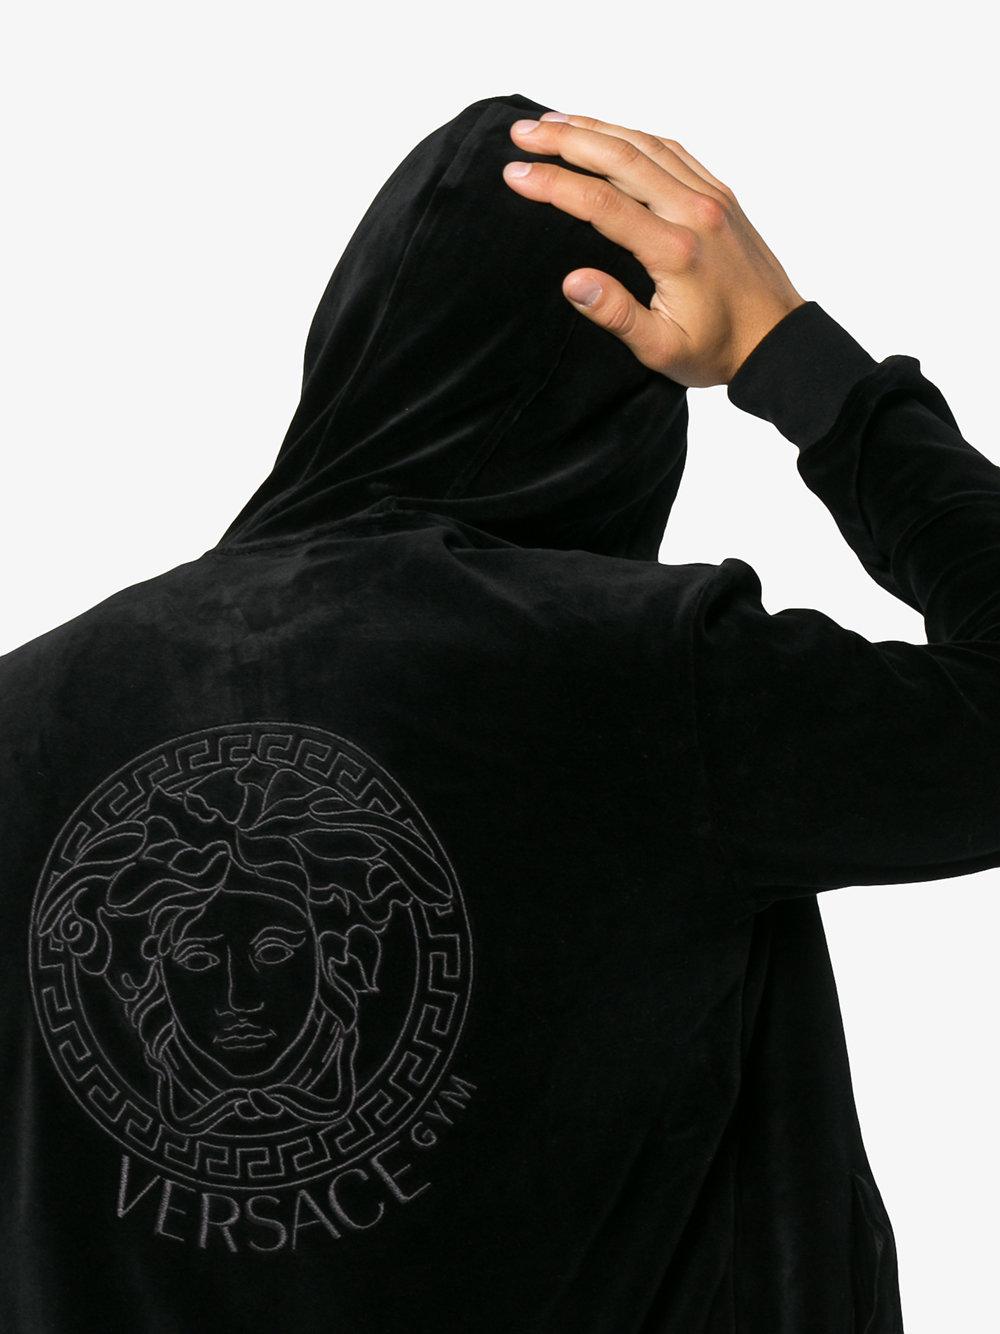 Versace Medusa Logo Velour Hoodie in Black for Men - Lyst